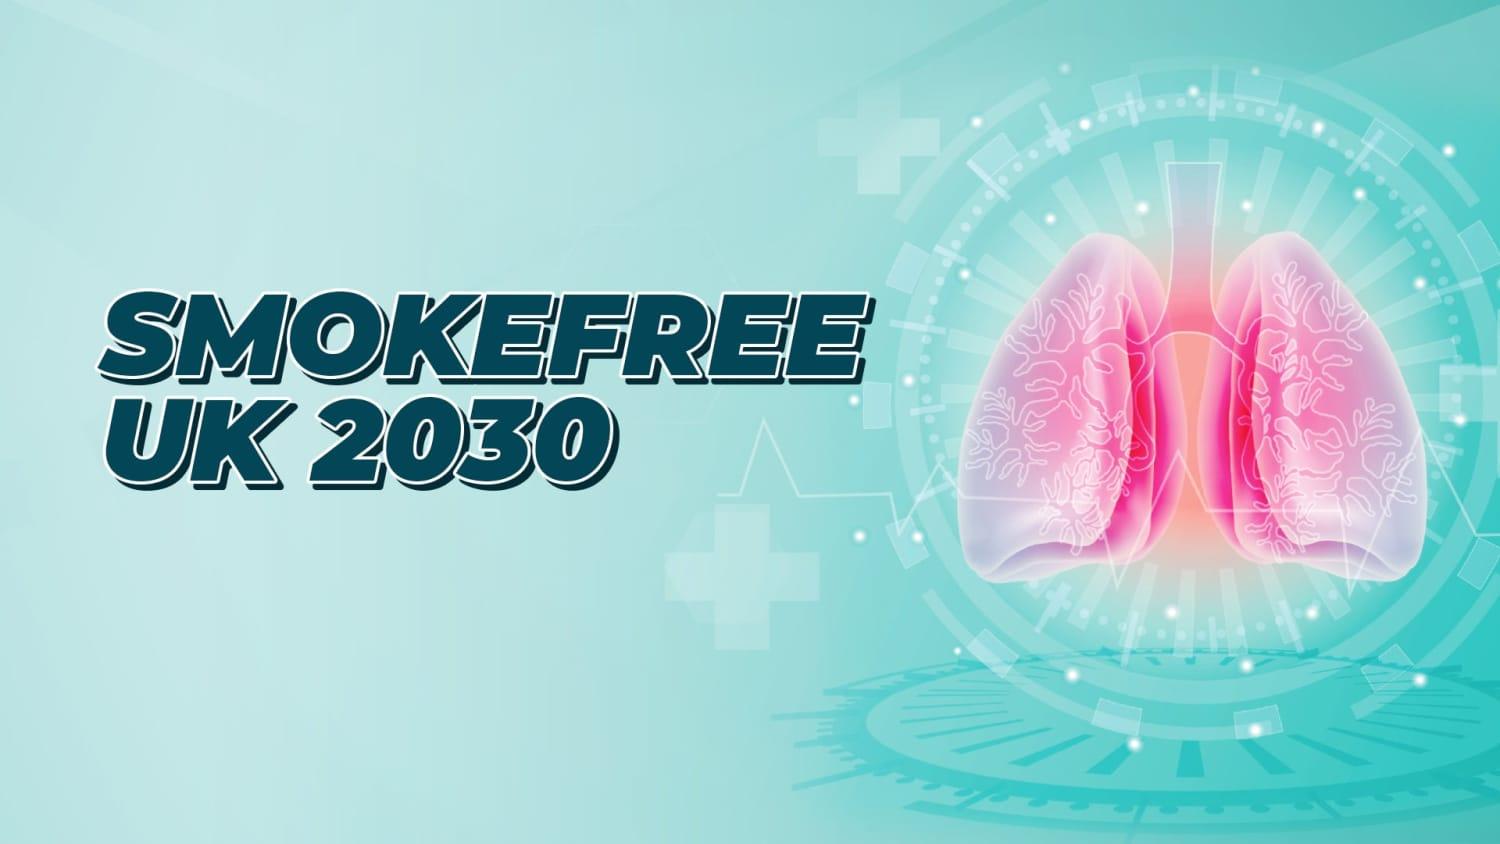 Smokefree UK 2030 - Category:Health, Sub Category:Quit Smoking